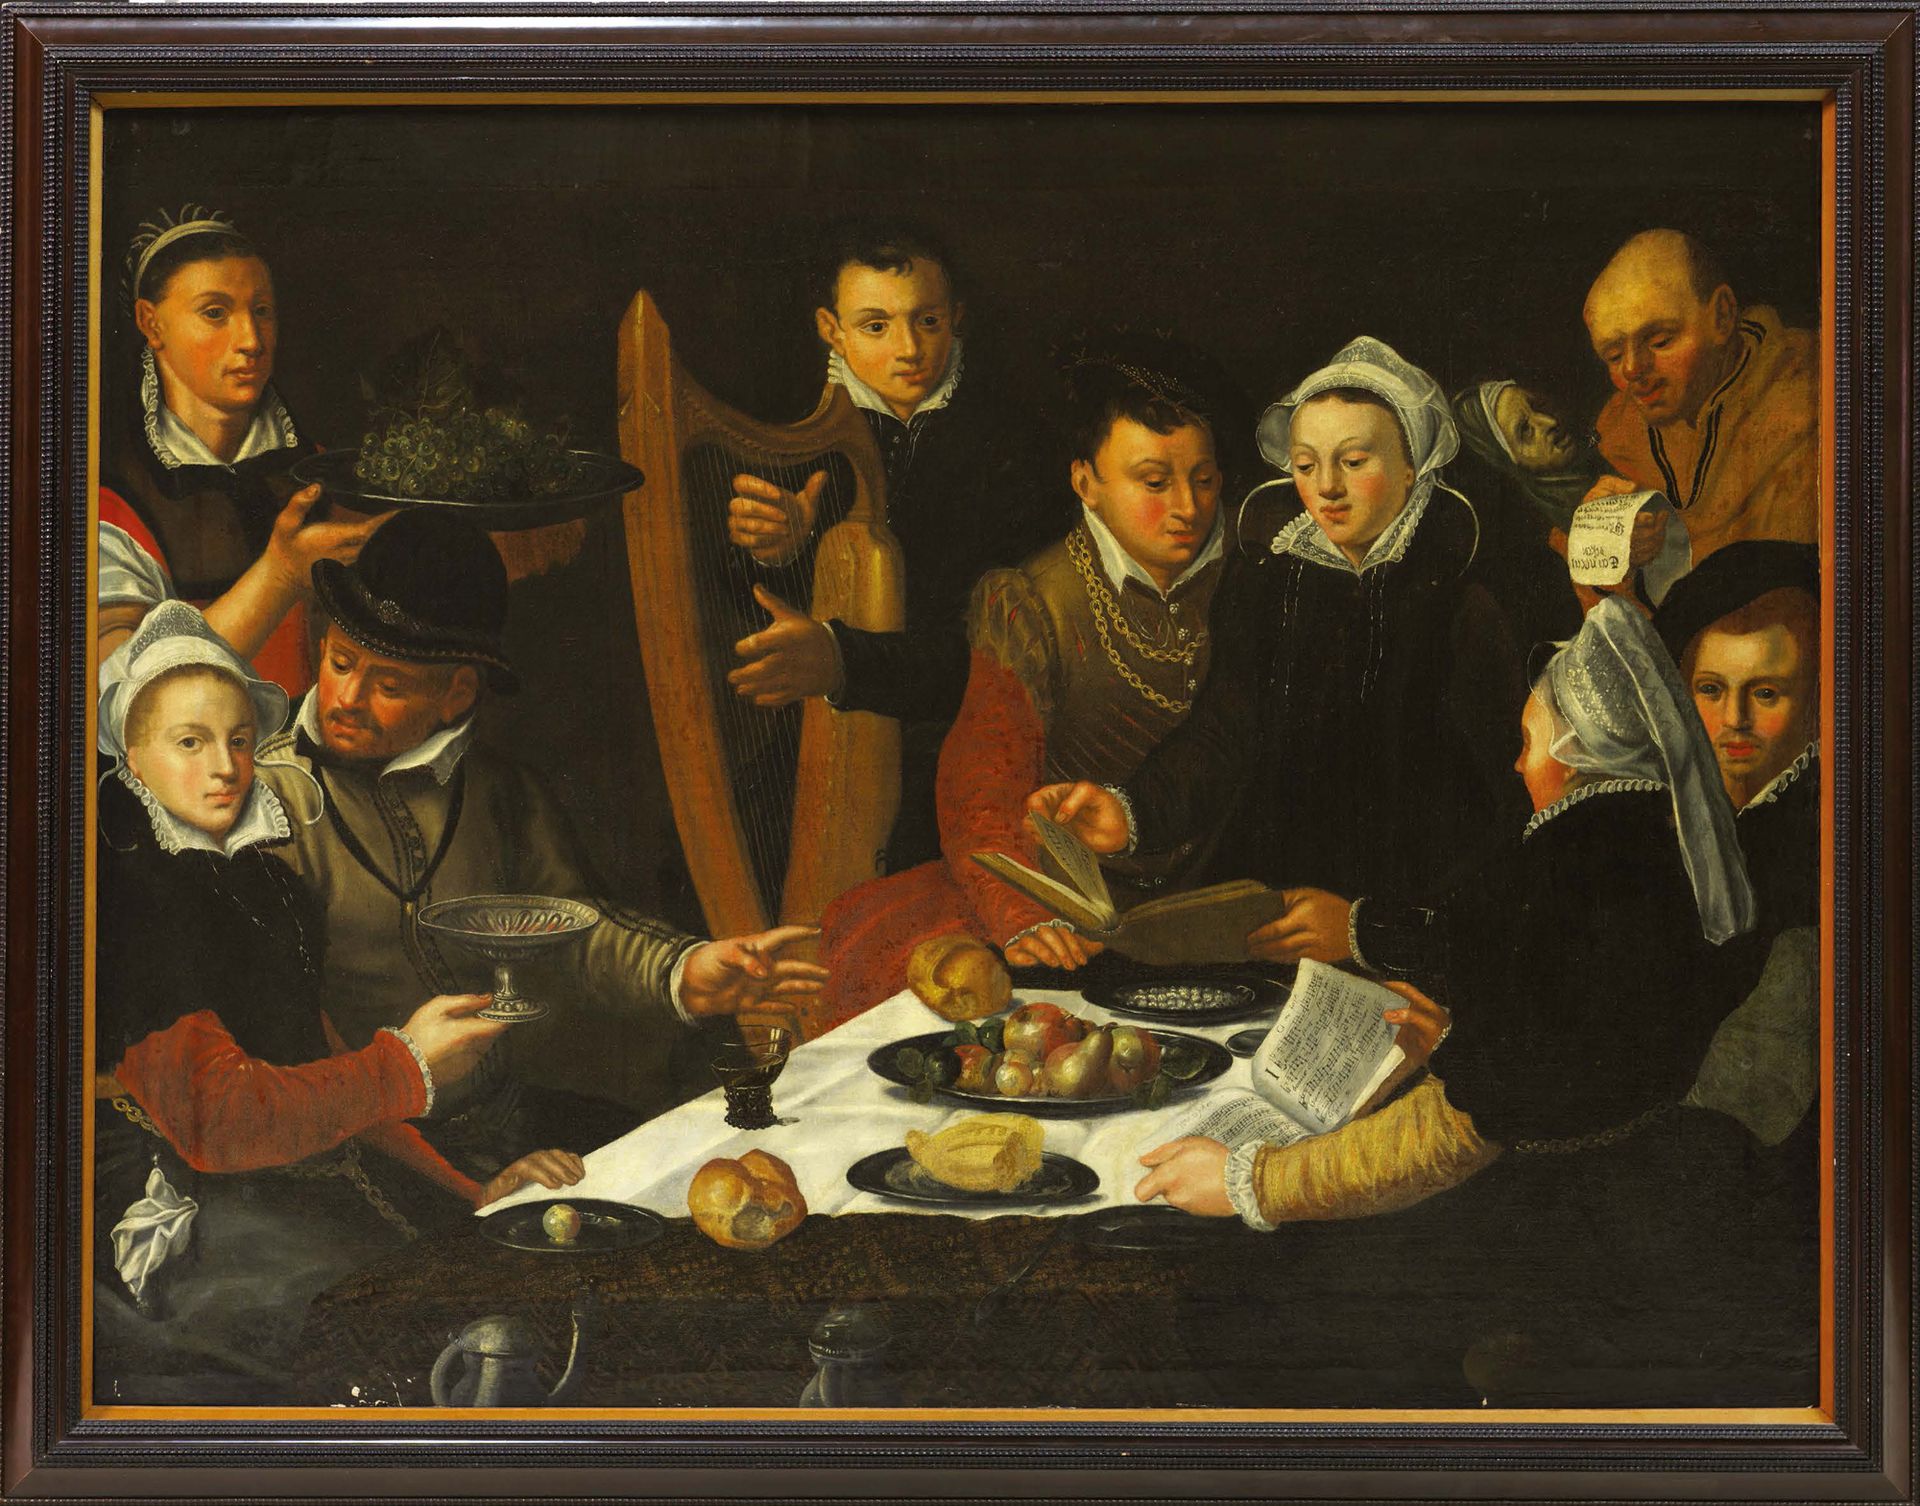 ECOLE HOLLANDAISE 1629, SUIVEUR DE DIRCK BARENTZ Repas galant avec musiciens
Hui&hellip;